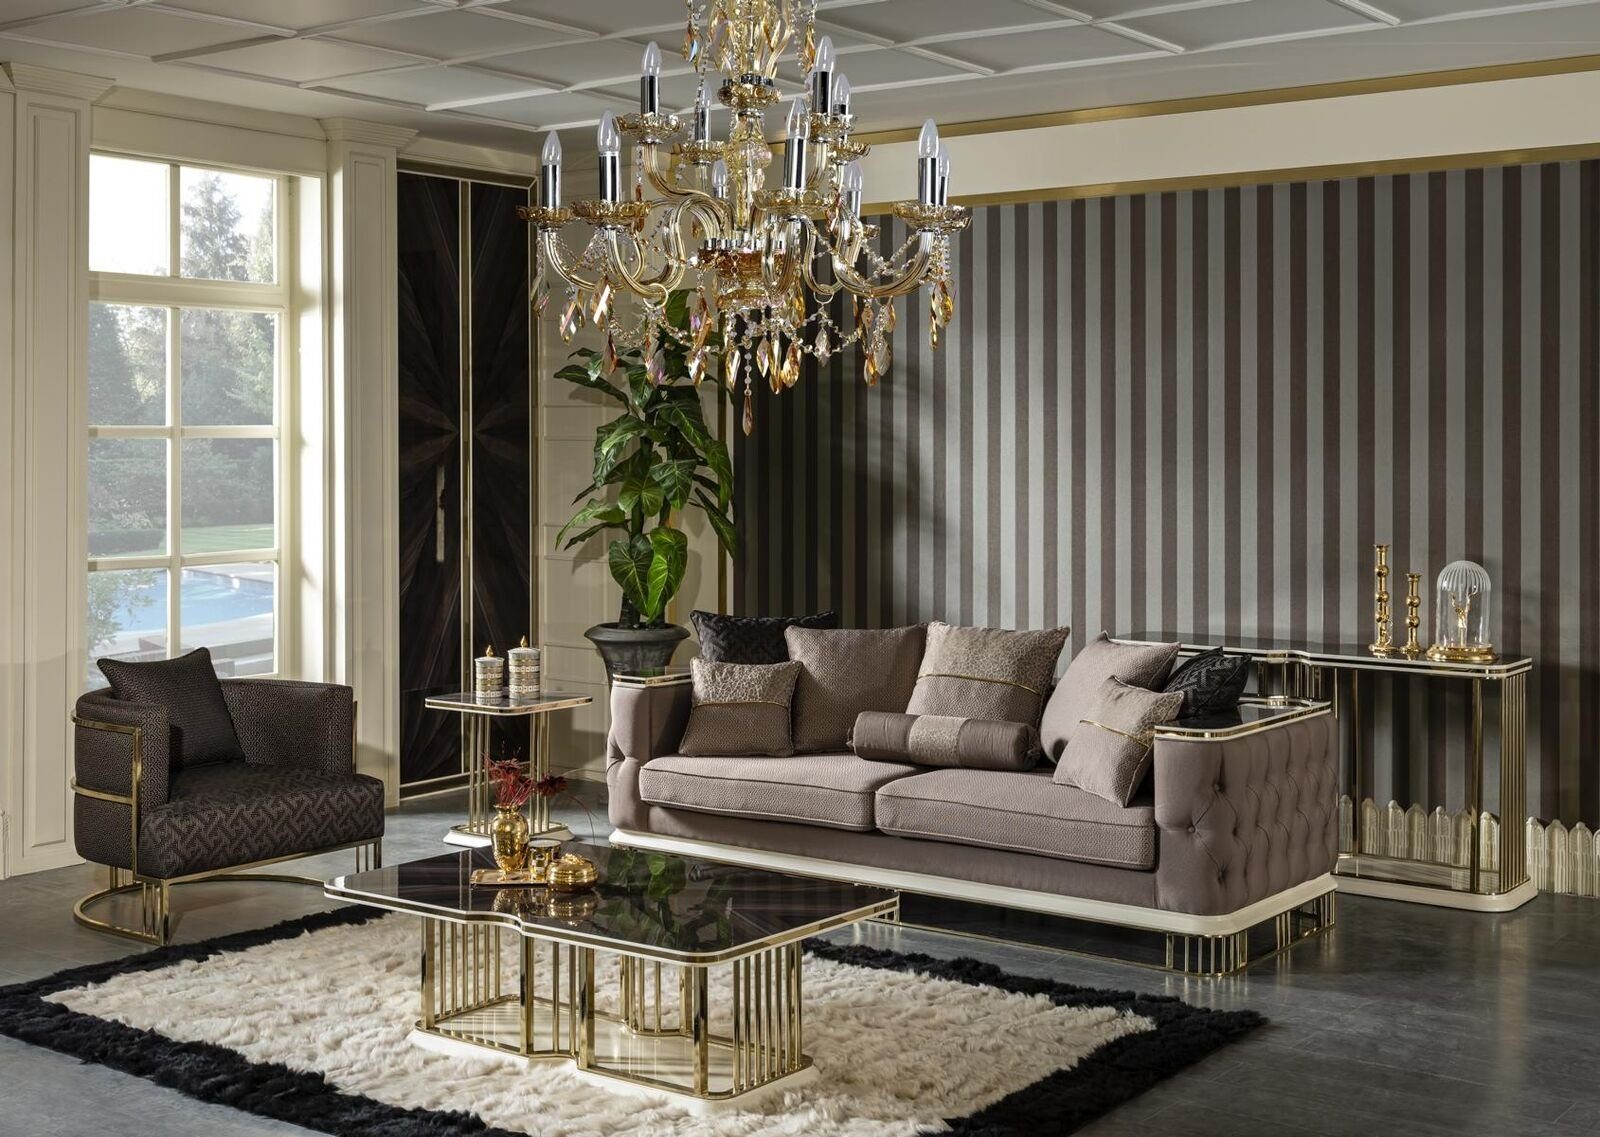 JVmoebel Sofa Sofa 3 Sitzer Made Europe Design in Polster Wohnzimmer Braun Luxus Möbel, Stoff